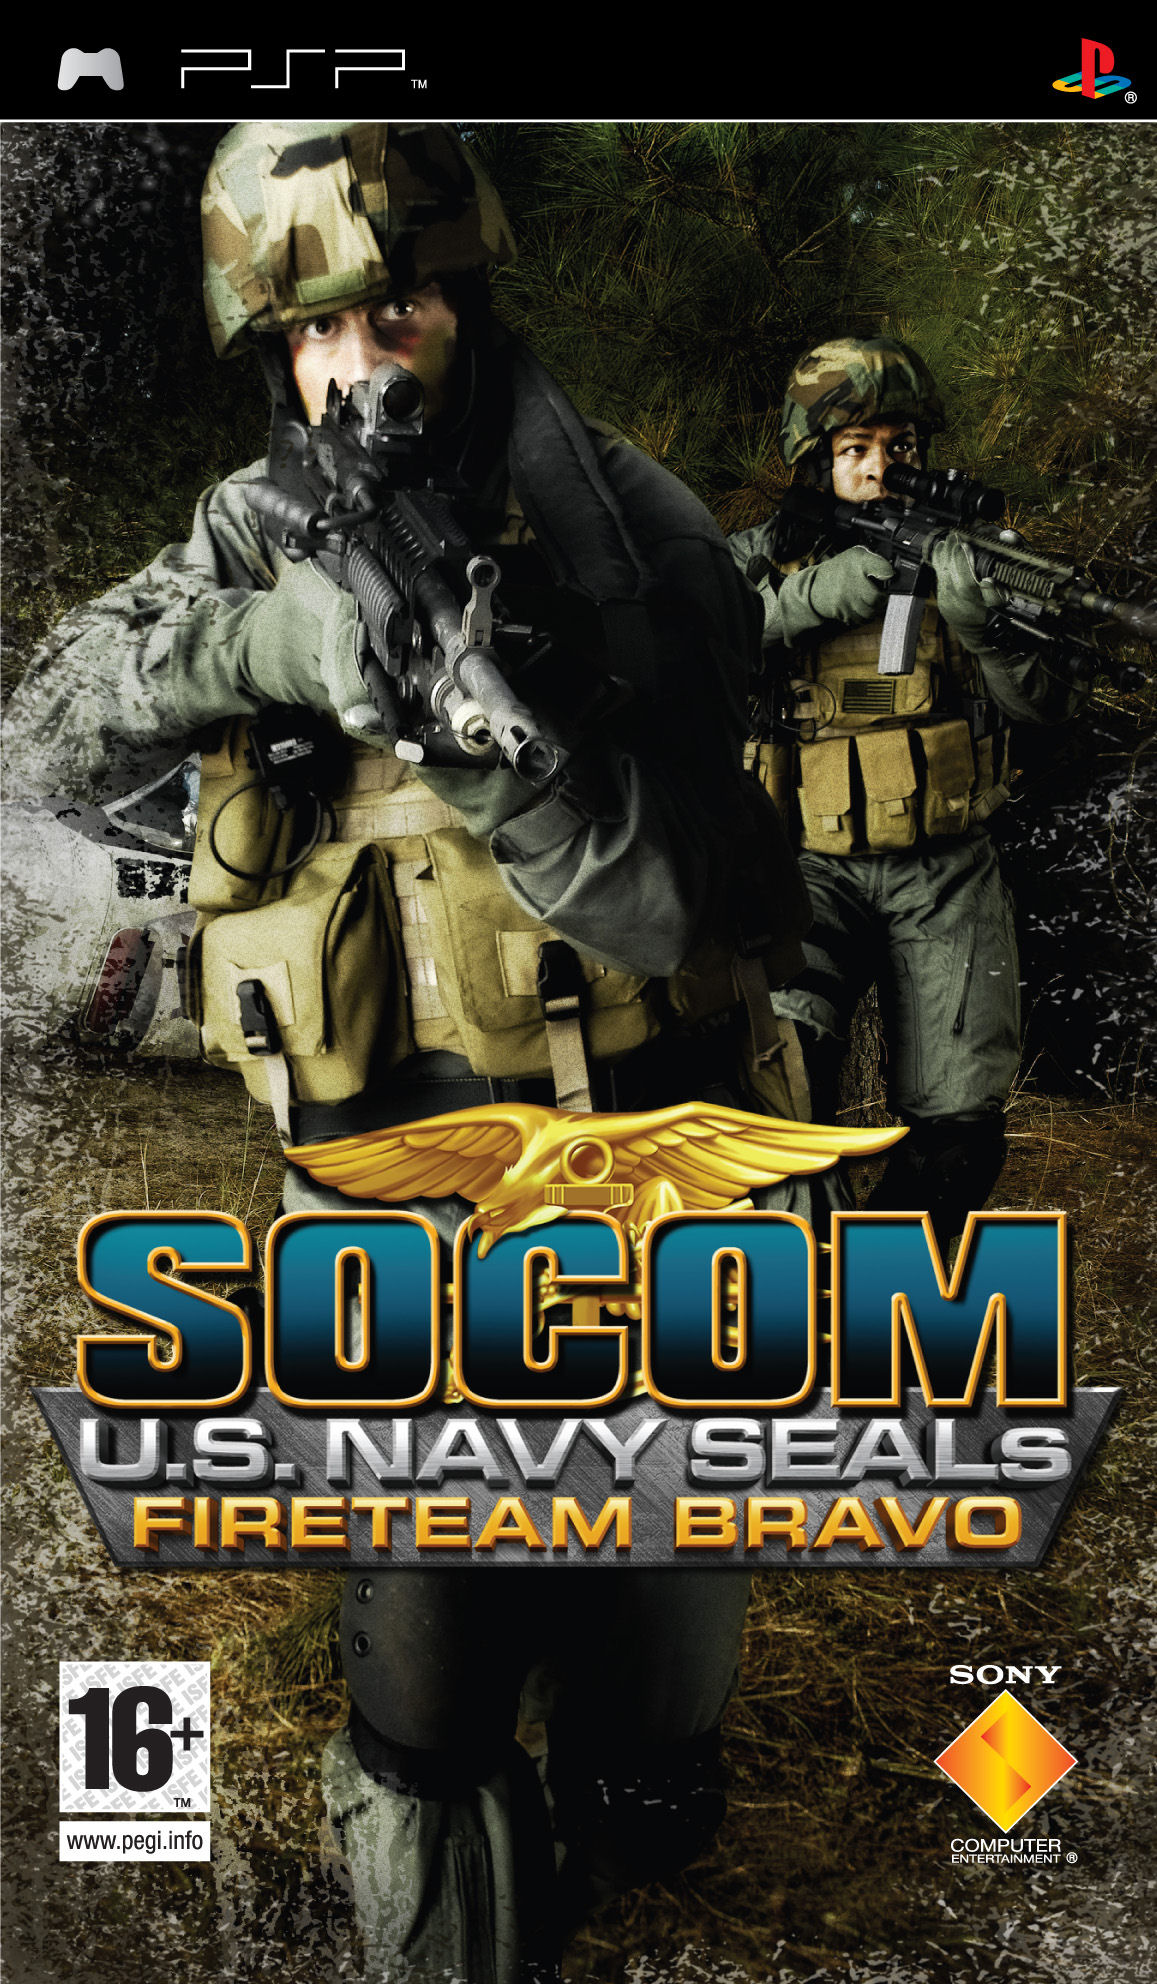 SOCOM II U.S. Navy SEALs - Wikipedia